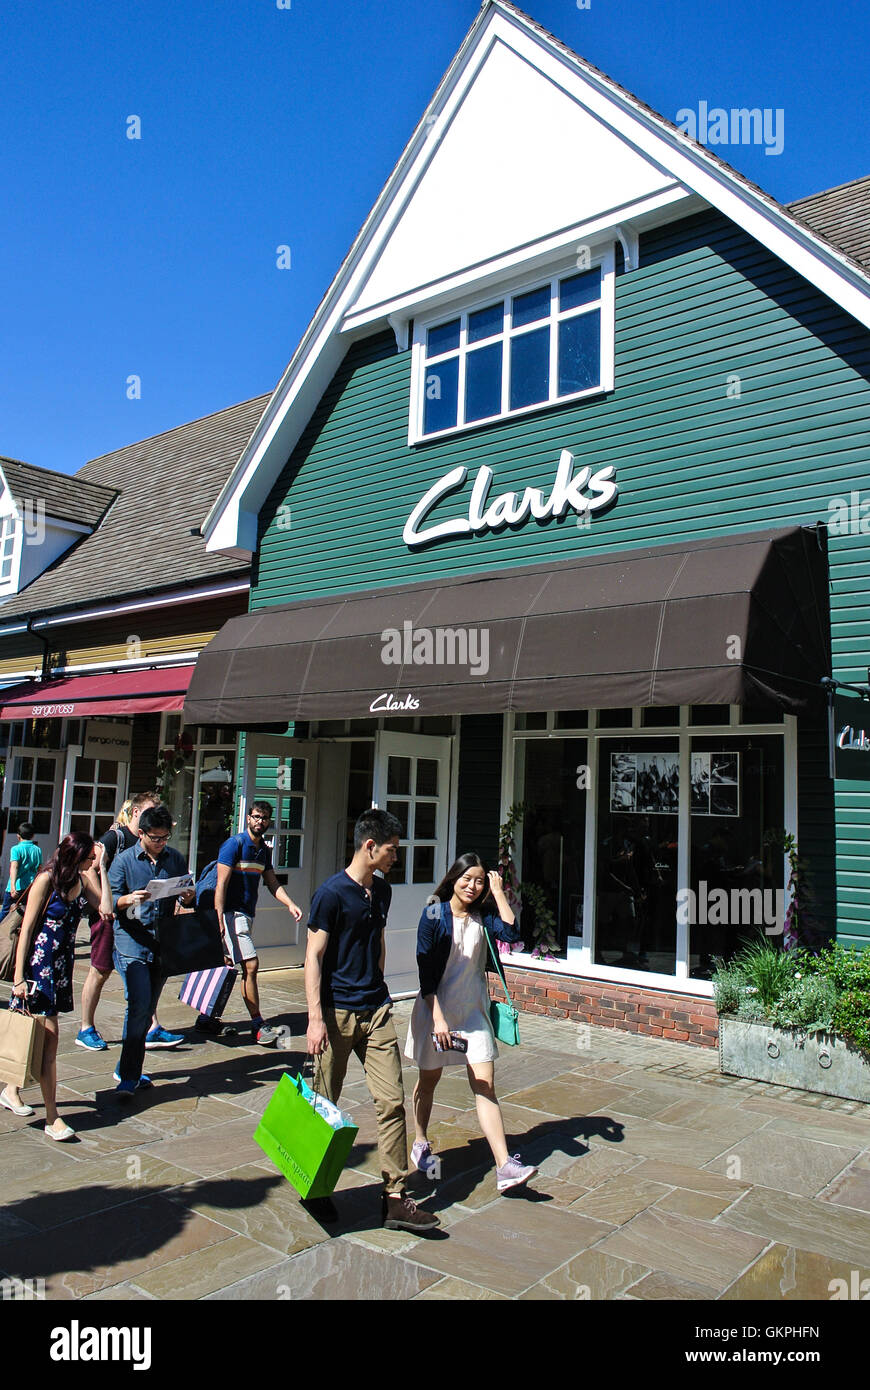 clarks retail village